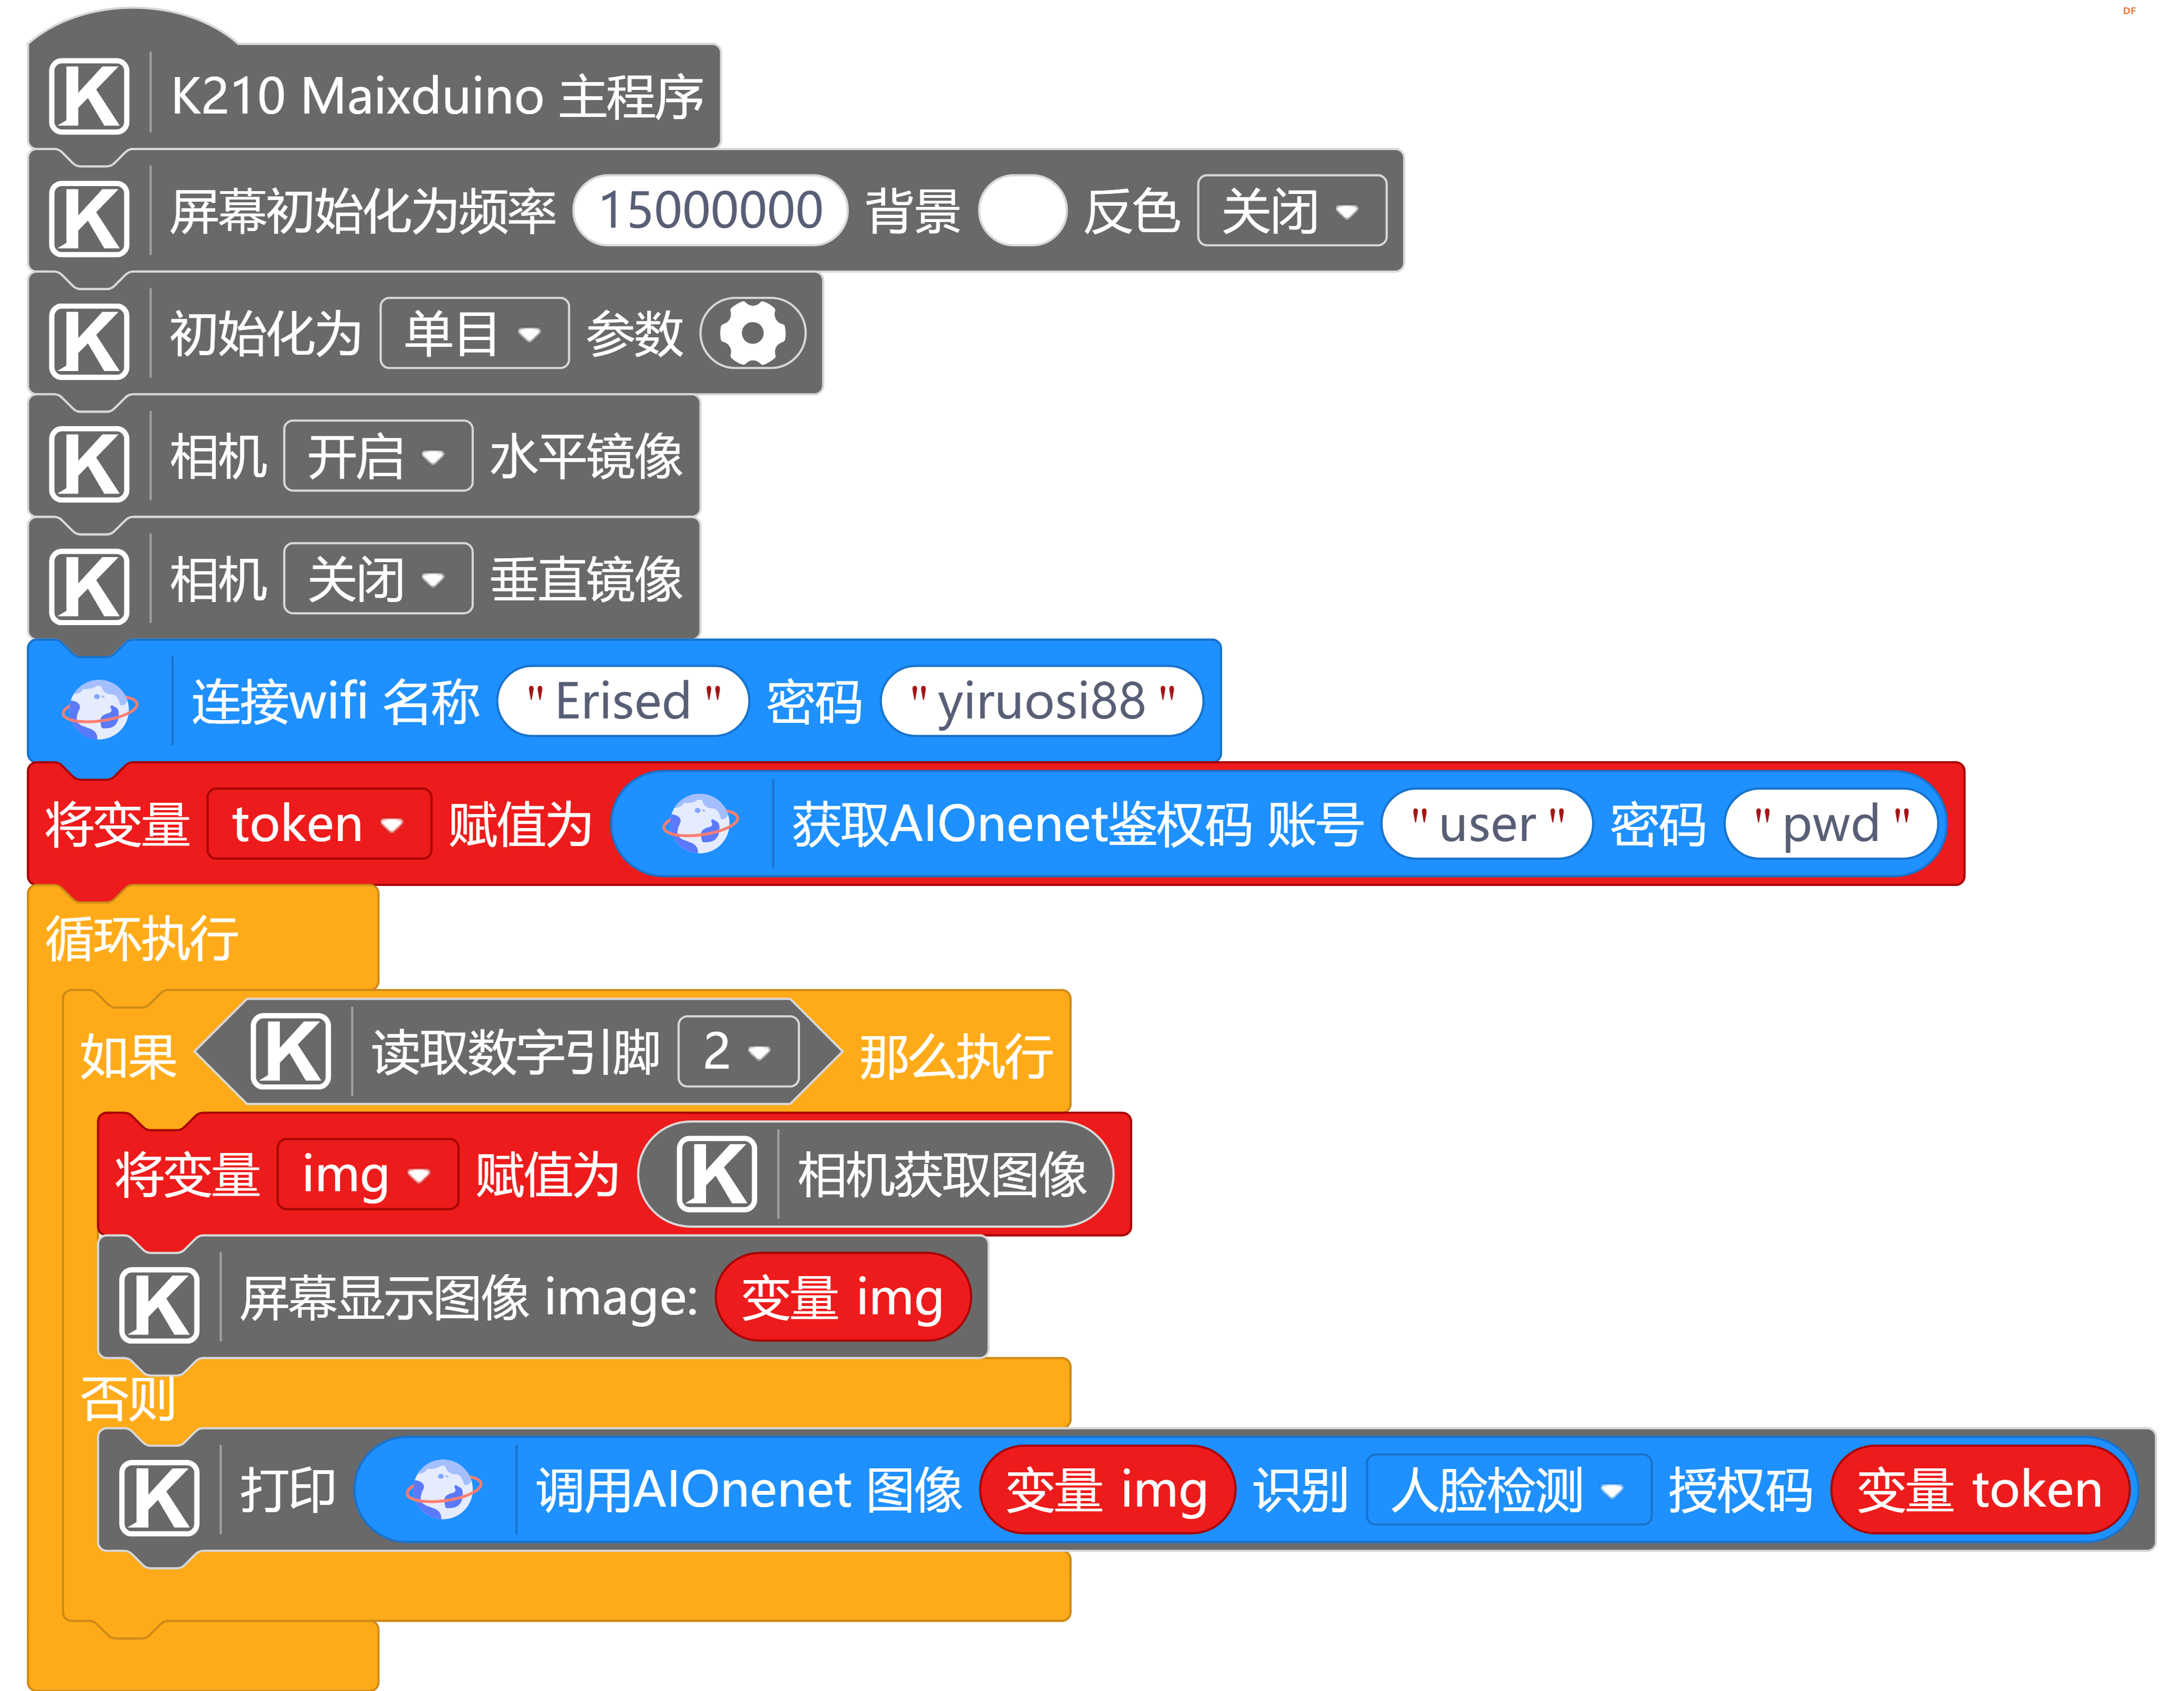 【mind+ maixduino用户库】网络Network图15